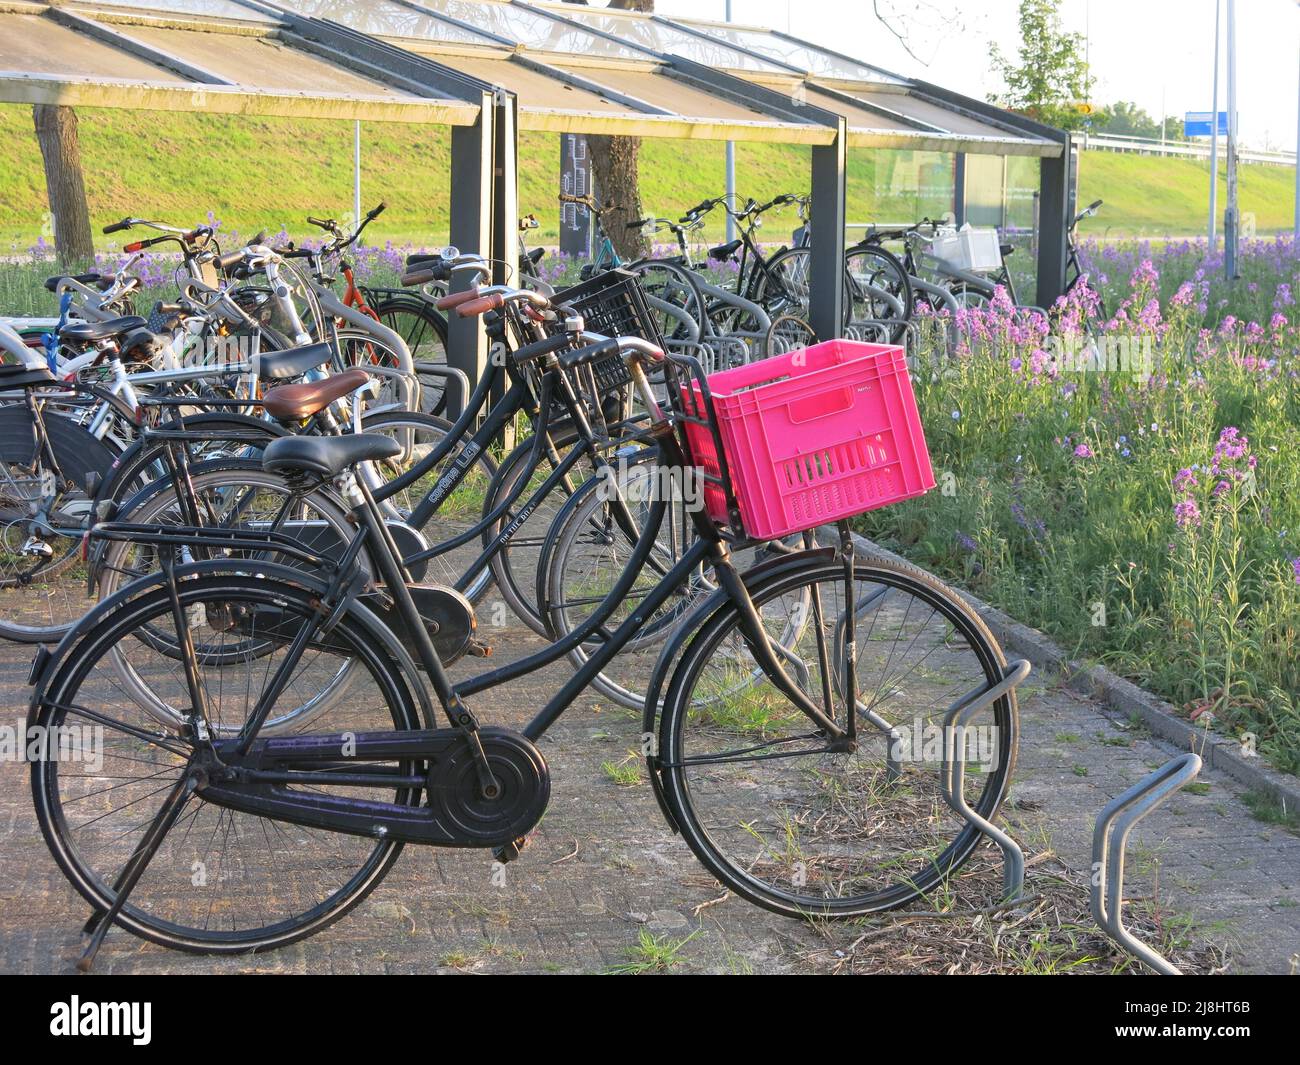 El ciclismo como transporte sostenible: La ciudad modelo de Almere tiene un montón de soportes para bicicletas como parte de las políticas de transporte integradas de los Países Bajos. Foto de stock